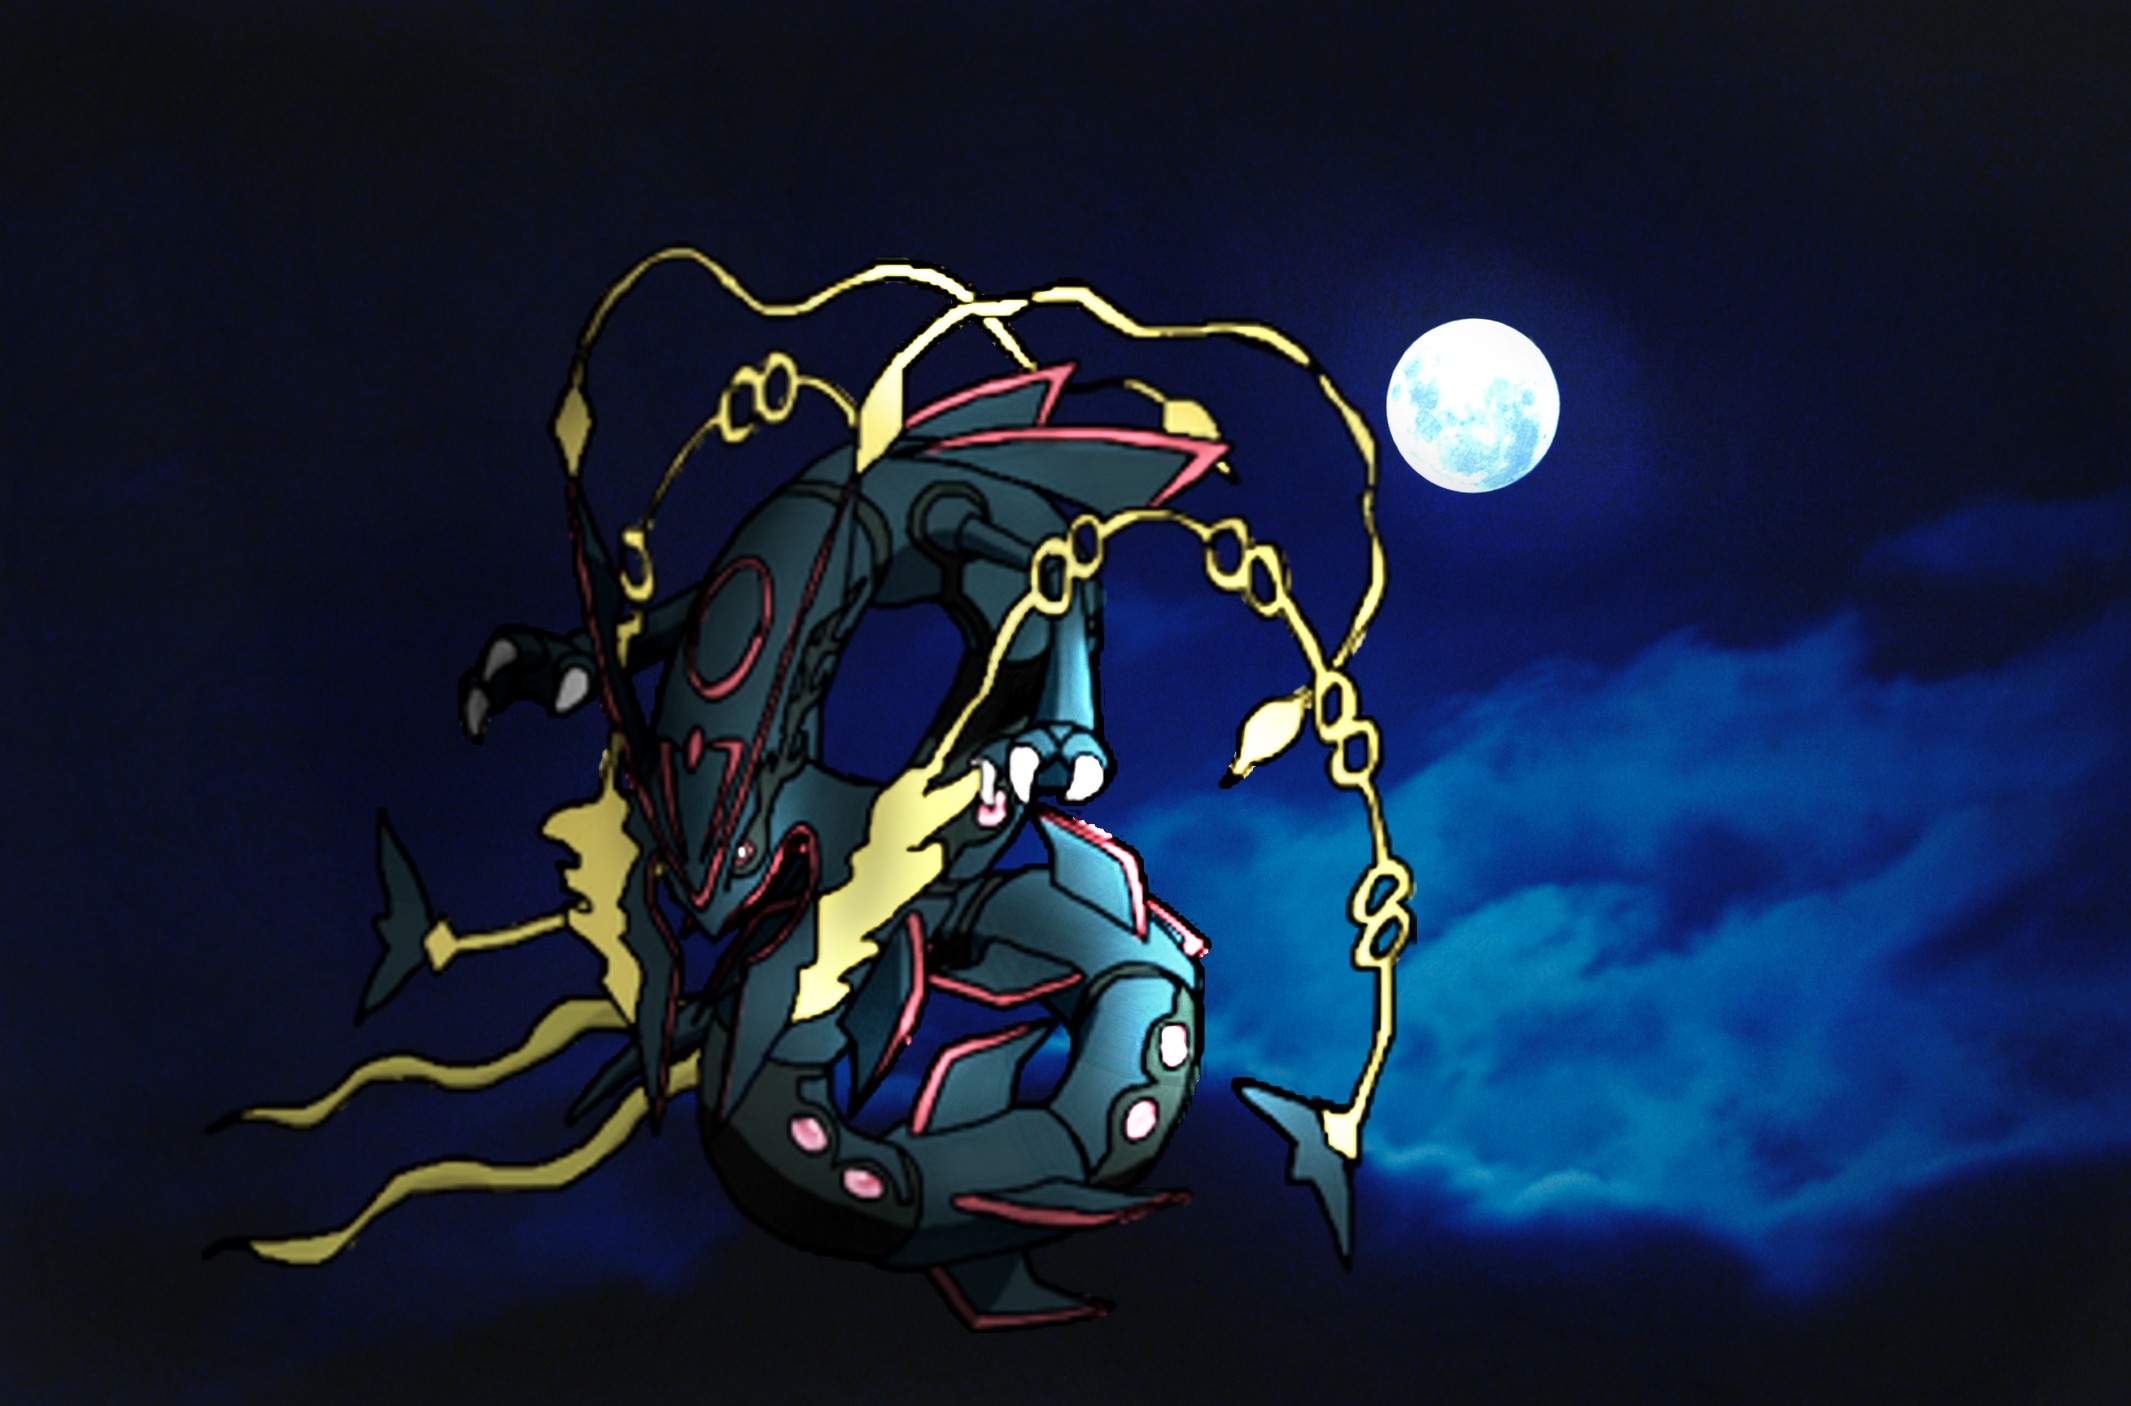 ArtStation - Shiny Mega Rayquaza - Pokemon Fan Art, Evan